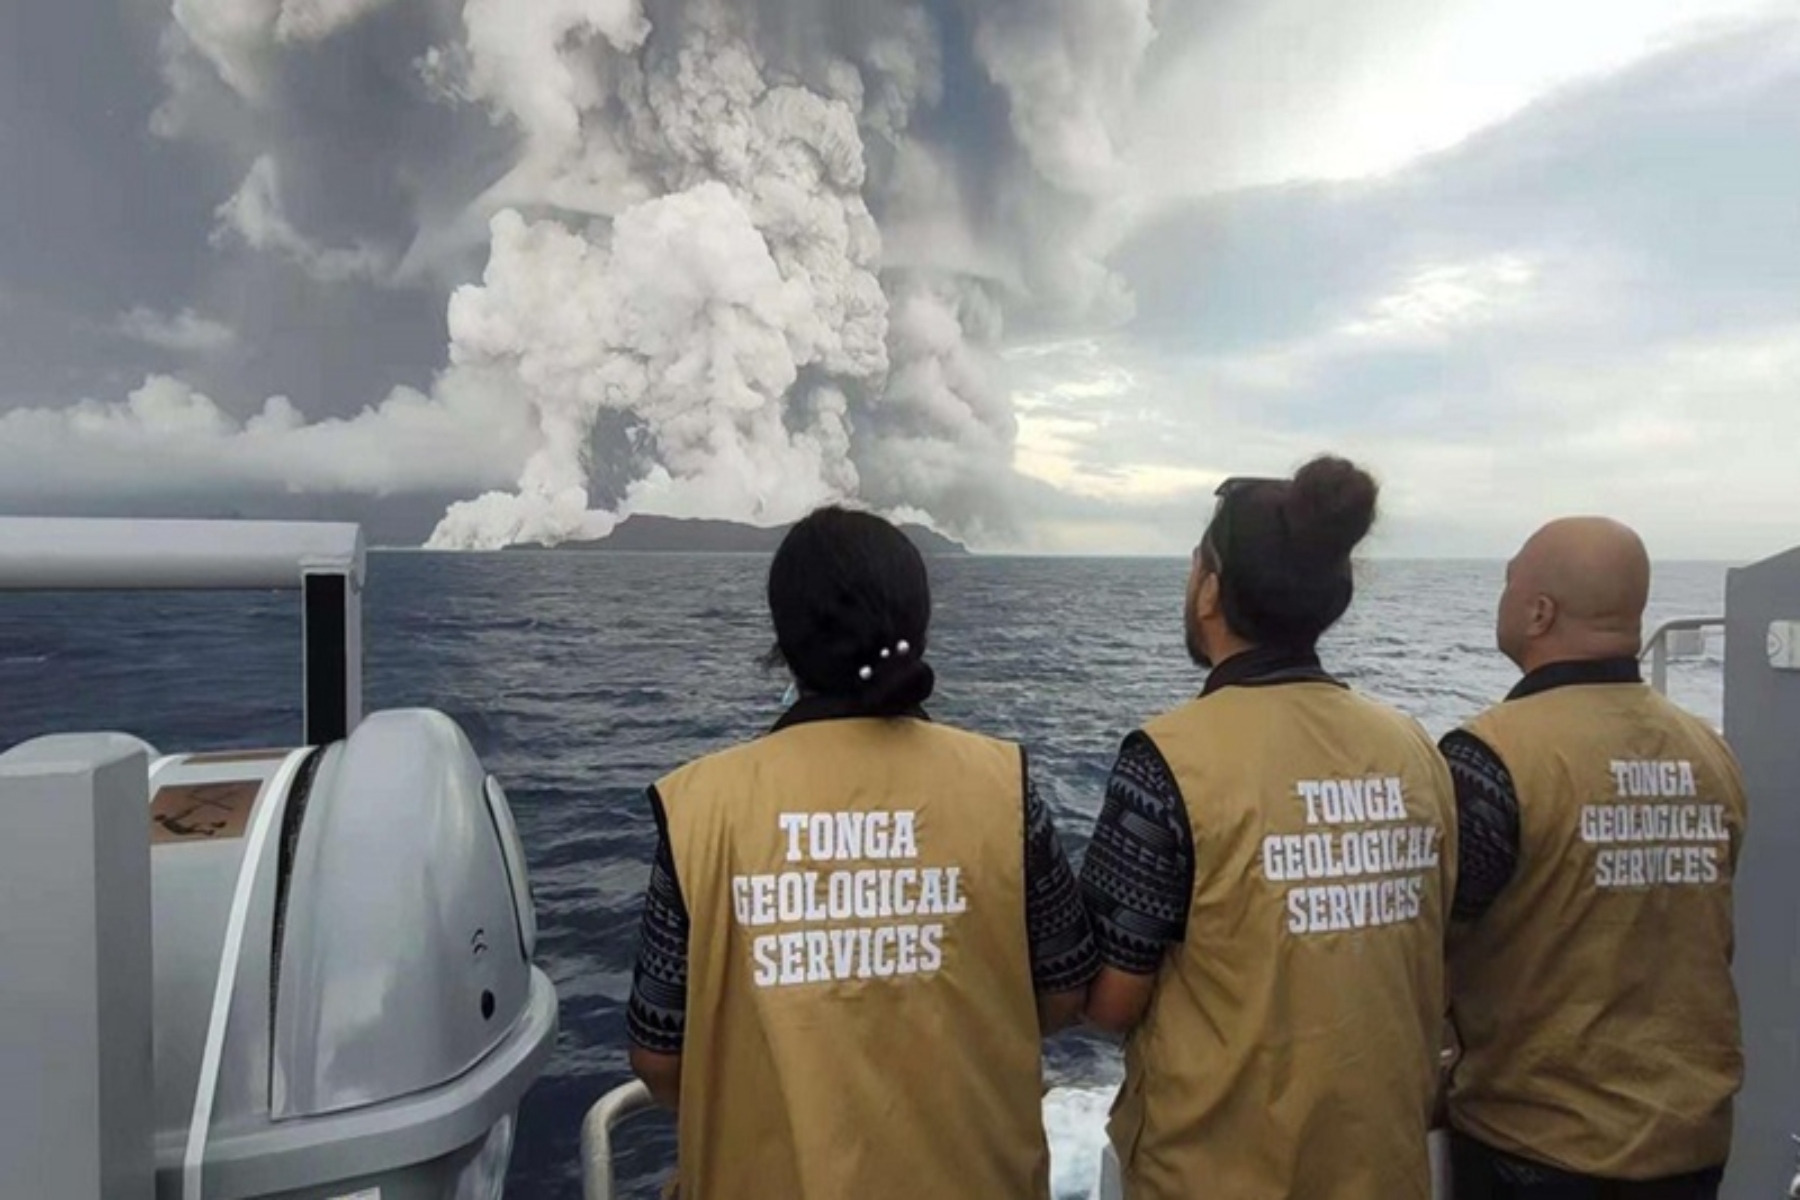 Τόνγκα ηφαίστειο: Κίνδυνοι για το αναπνευστικό από την ηφαιστειακή αιθαλομίχλη